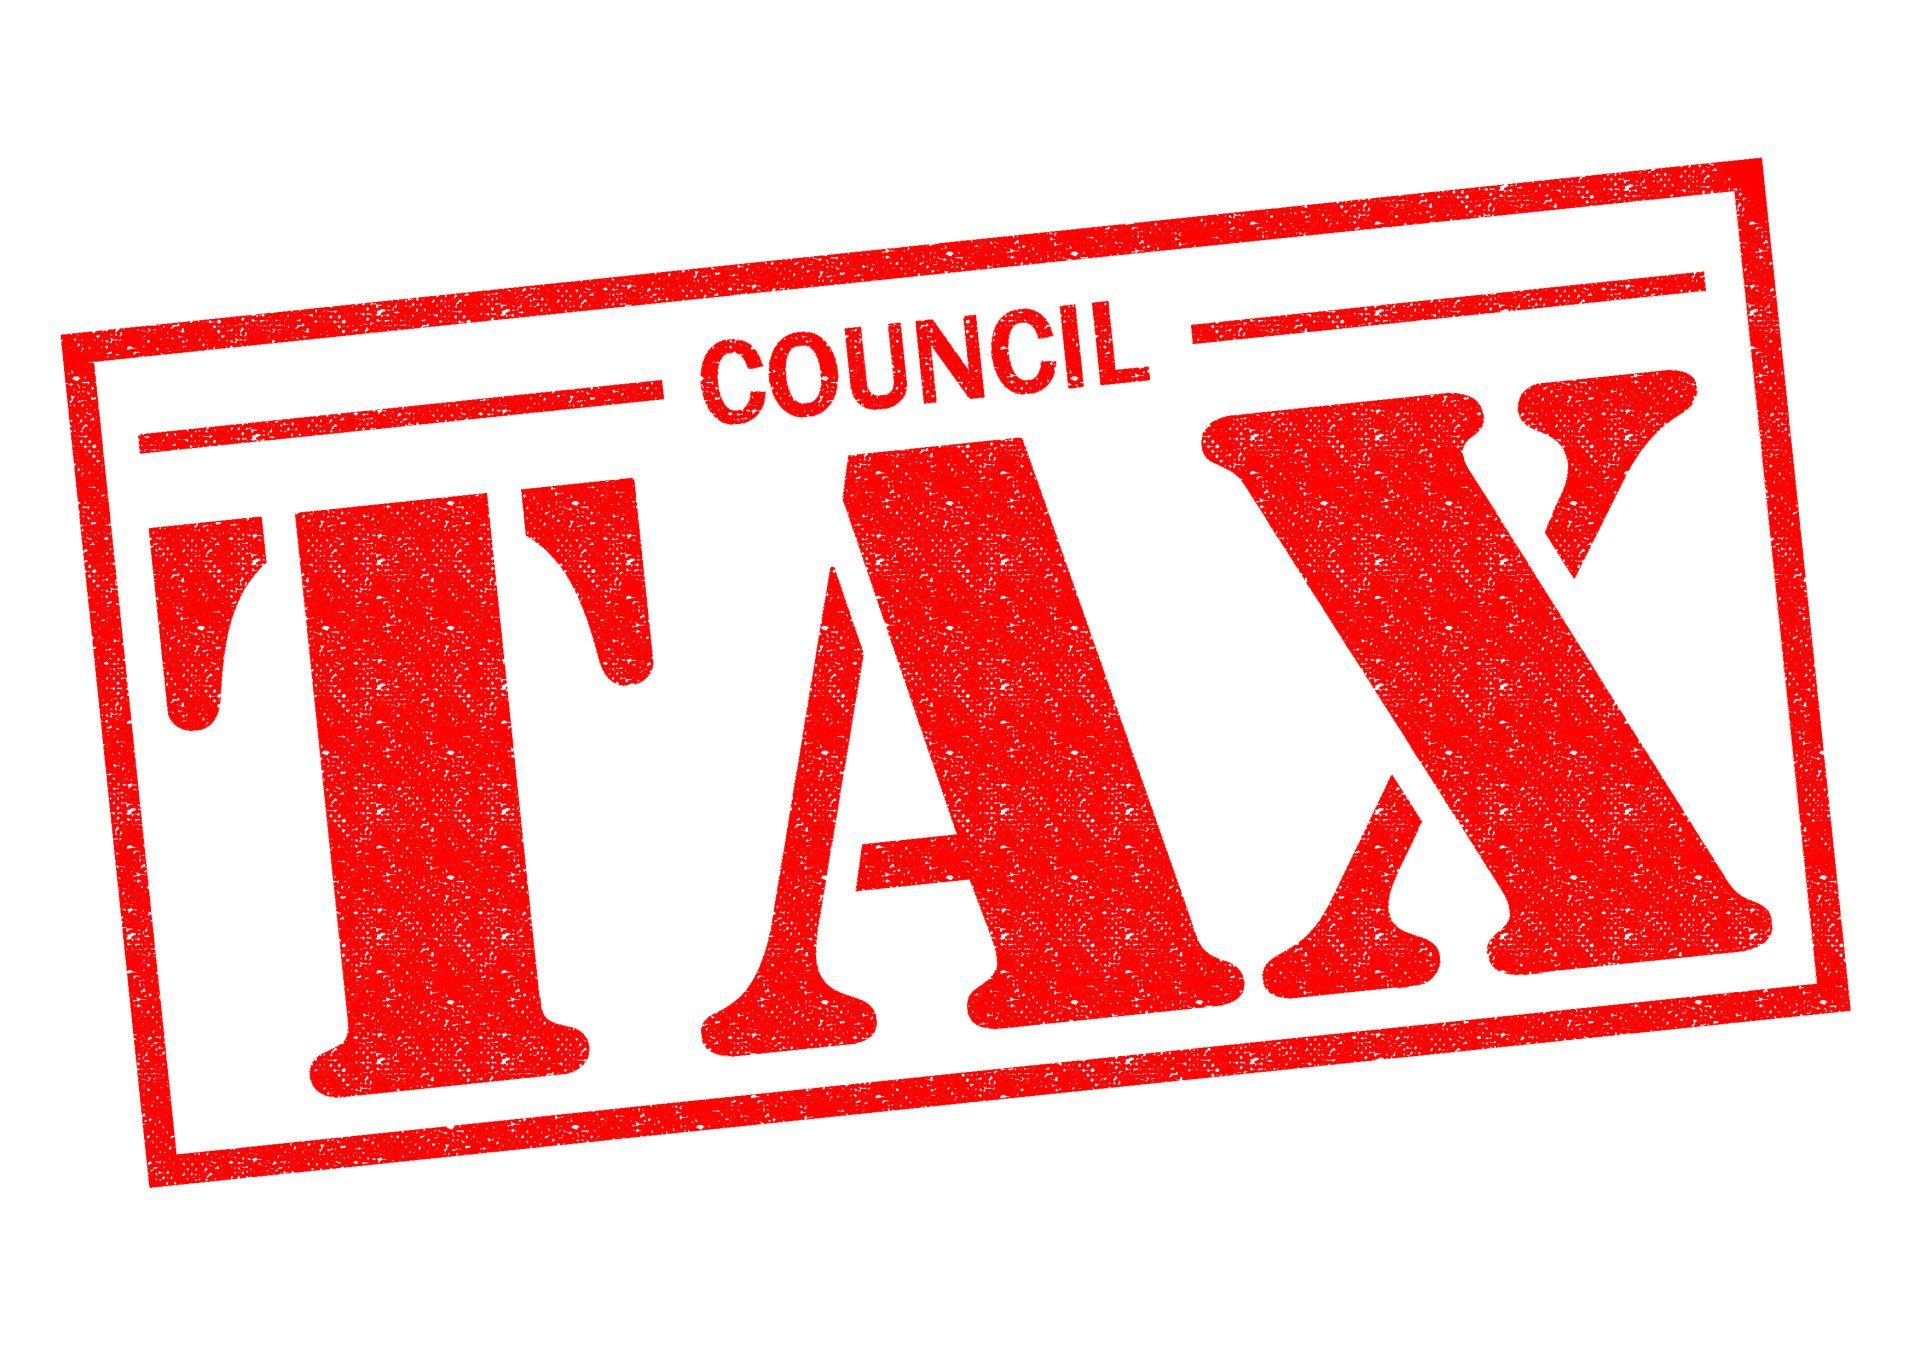 large-council-tax-rise-decision